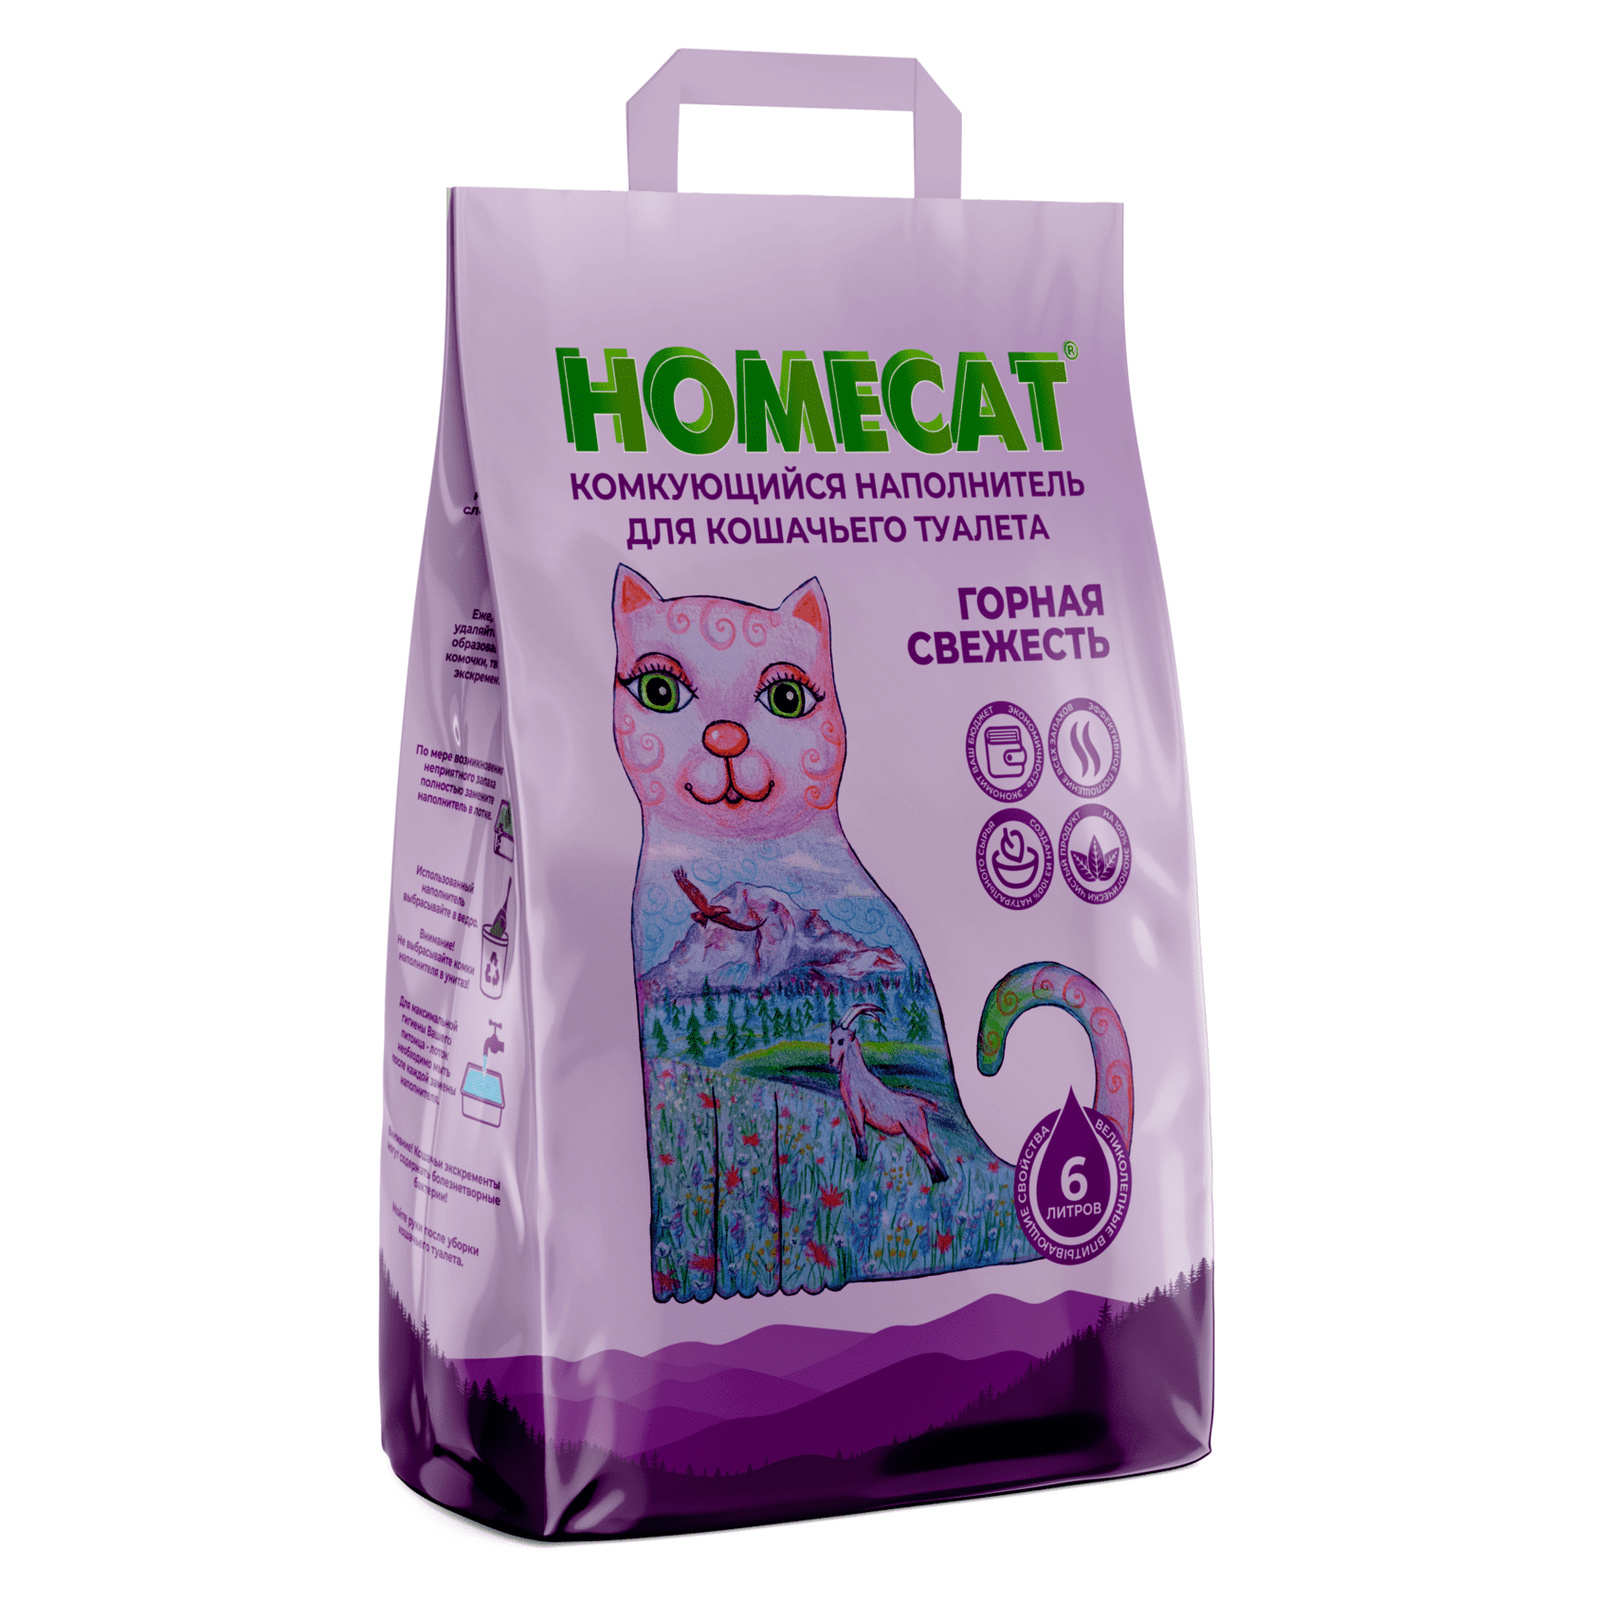 Homecat наполнитель Homecat наполнитель комкующийся наполнитель (10 кг) homecat наполнитель homecat наполнитель кукурузный комкующийся наполнитель эколайн 5 6 кг